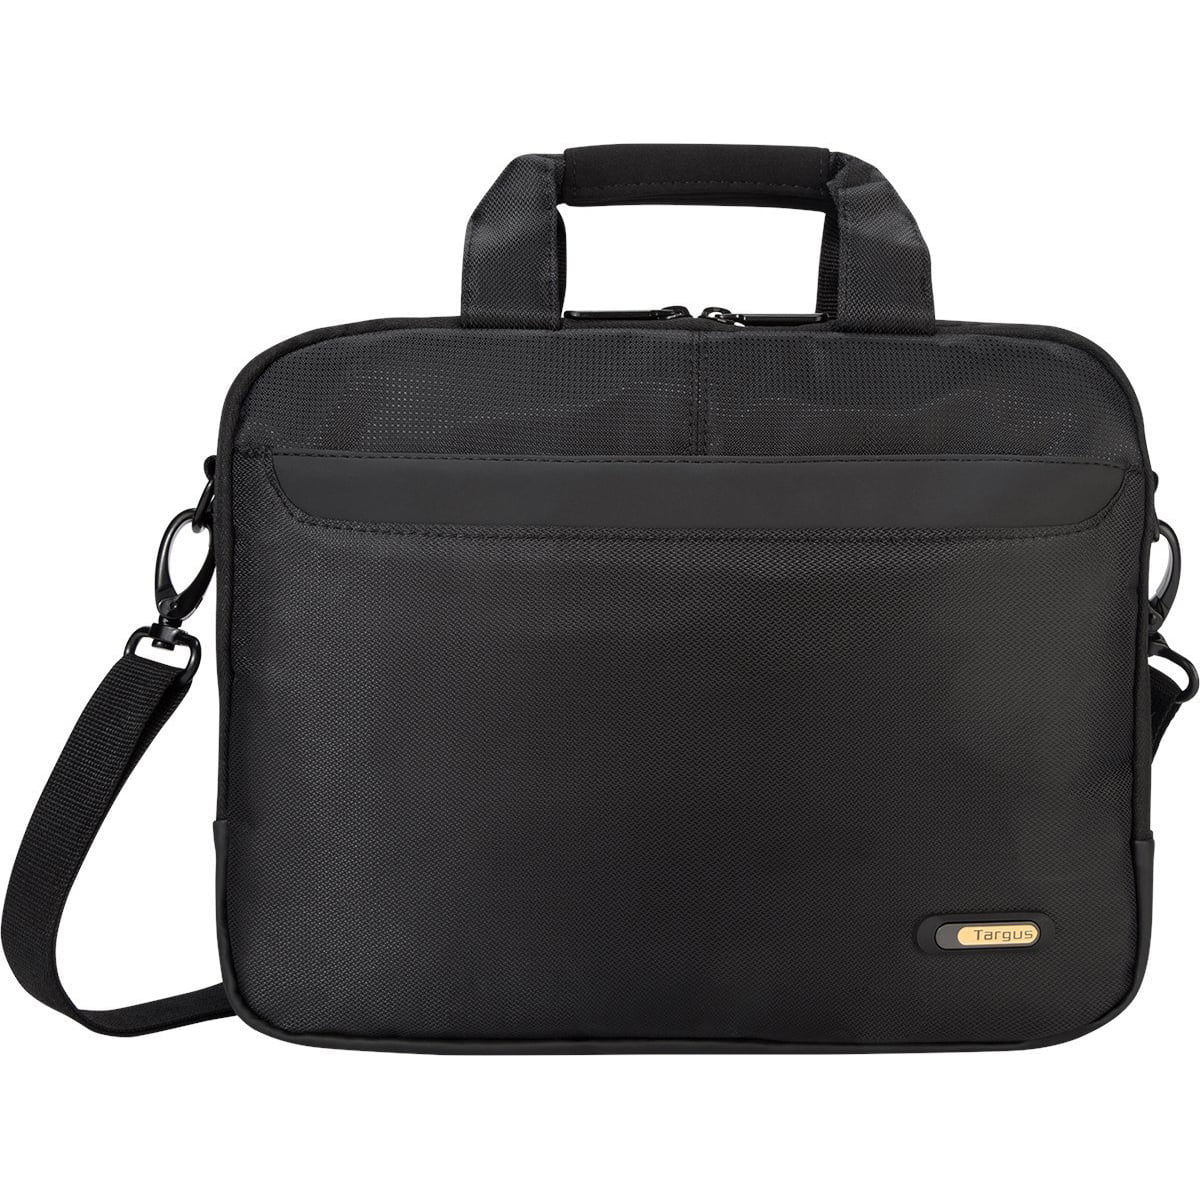 Targus Black Padded Carry Bag with Strap for 15.6/" Laptop Model# OCN1 NEW